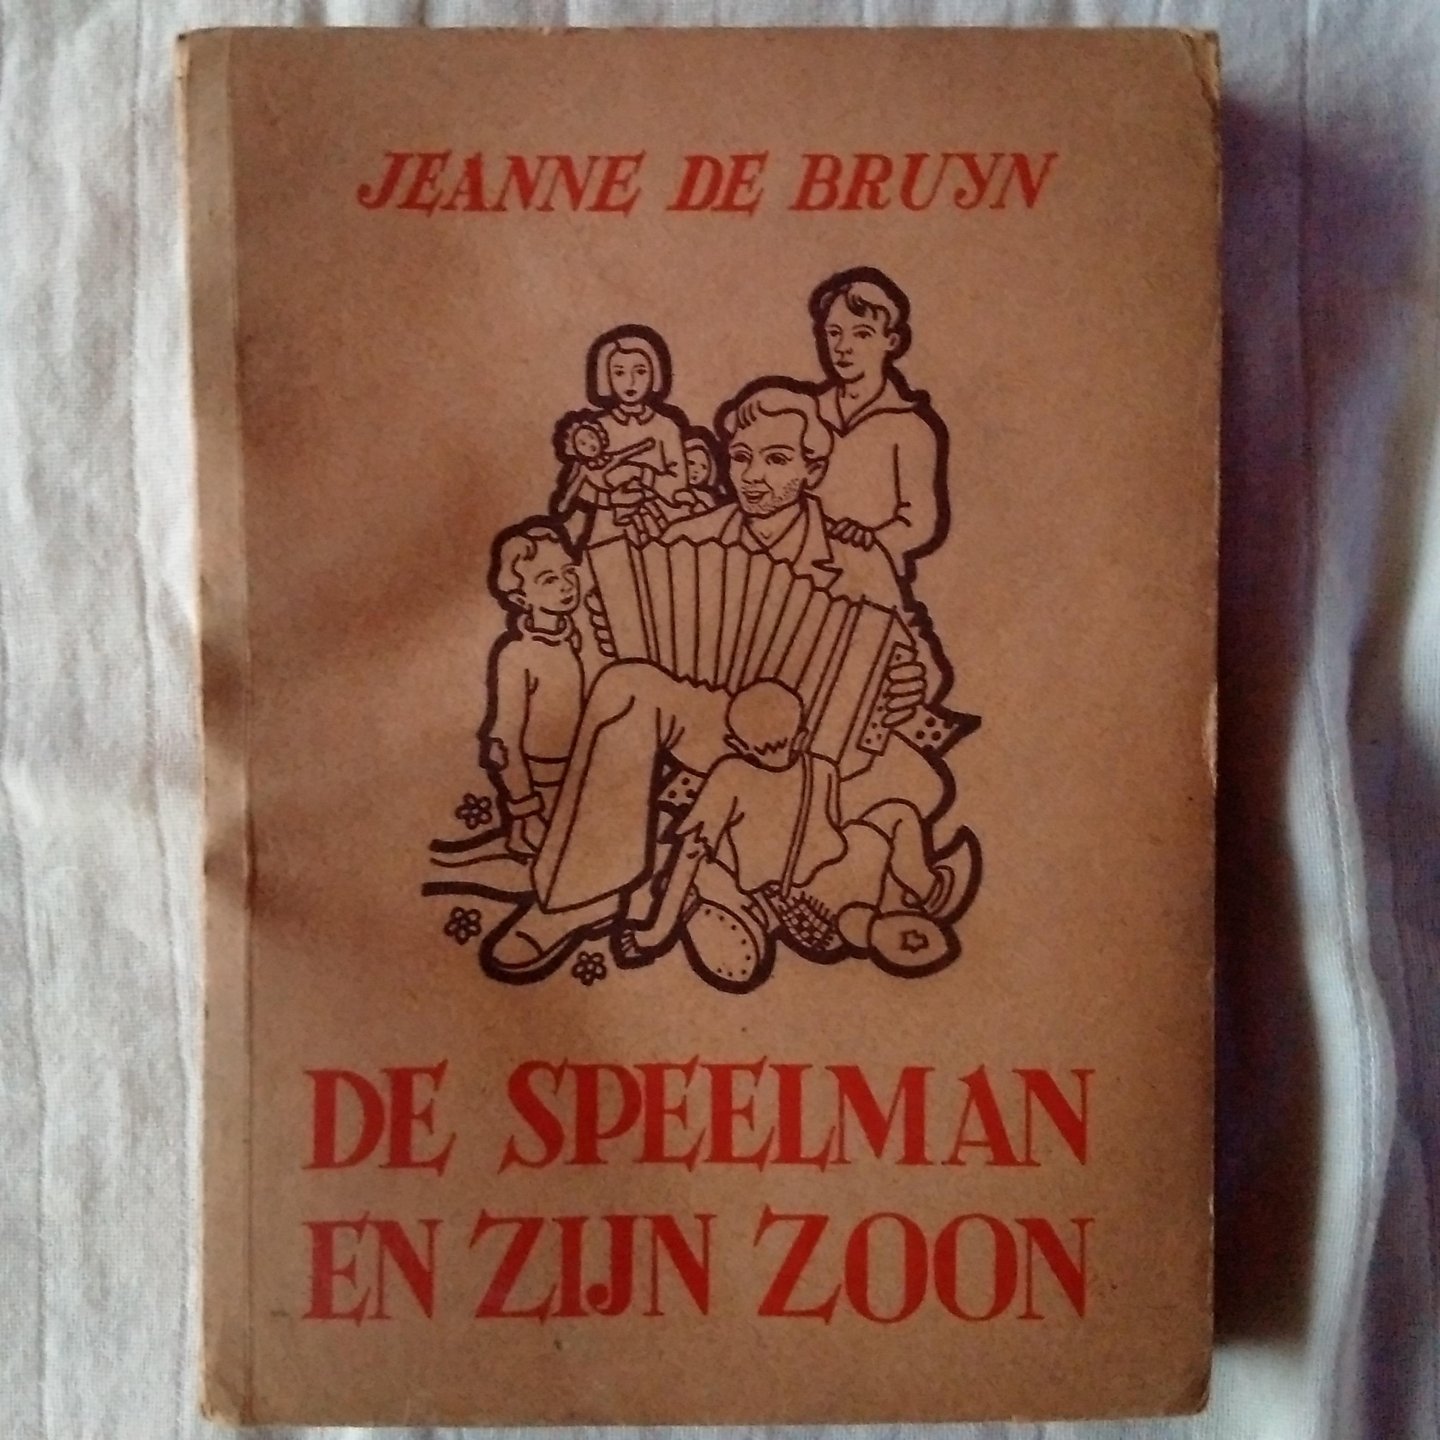 Bruyn, Jeanne de - De speelman en zijn zoon